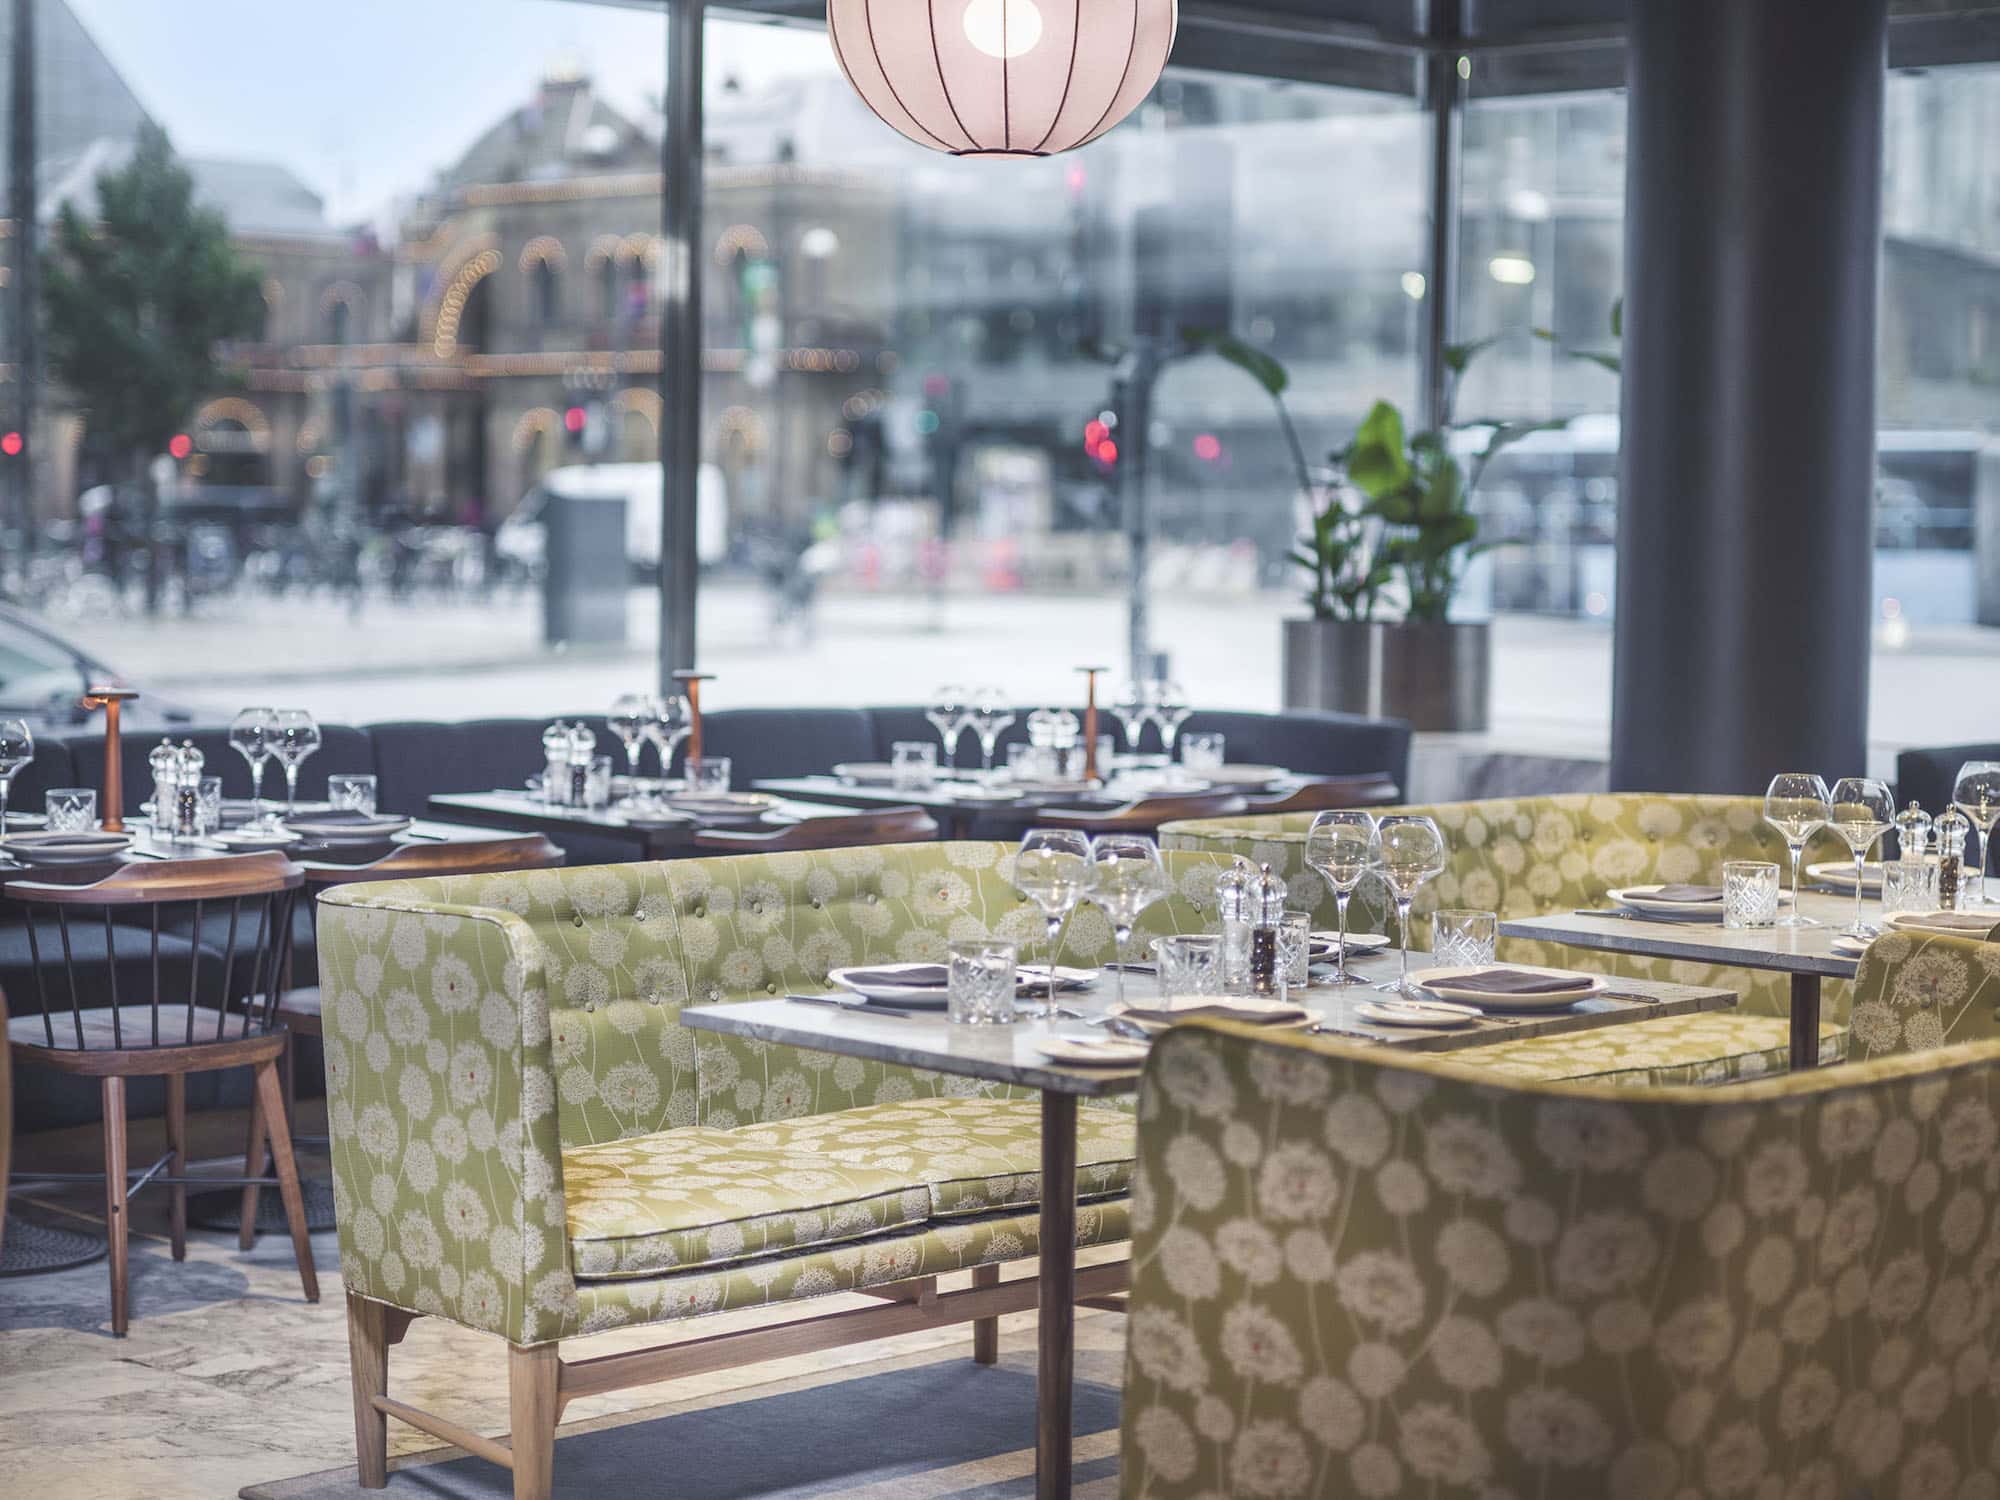 The Café Royal restaurant of the Radisson Blu Royal Hotel in Copenhagen designed by Arne Jacobsen